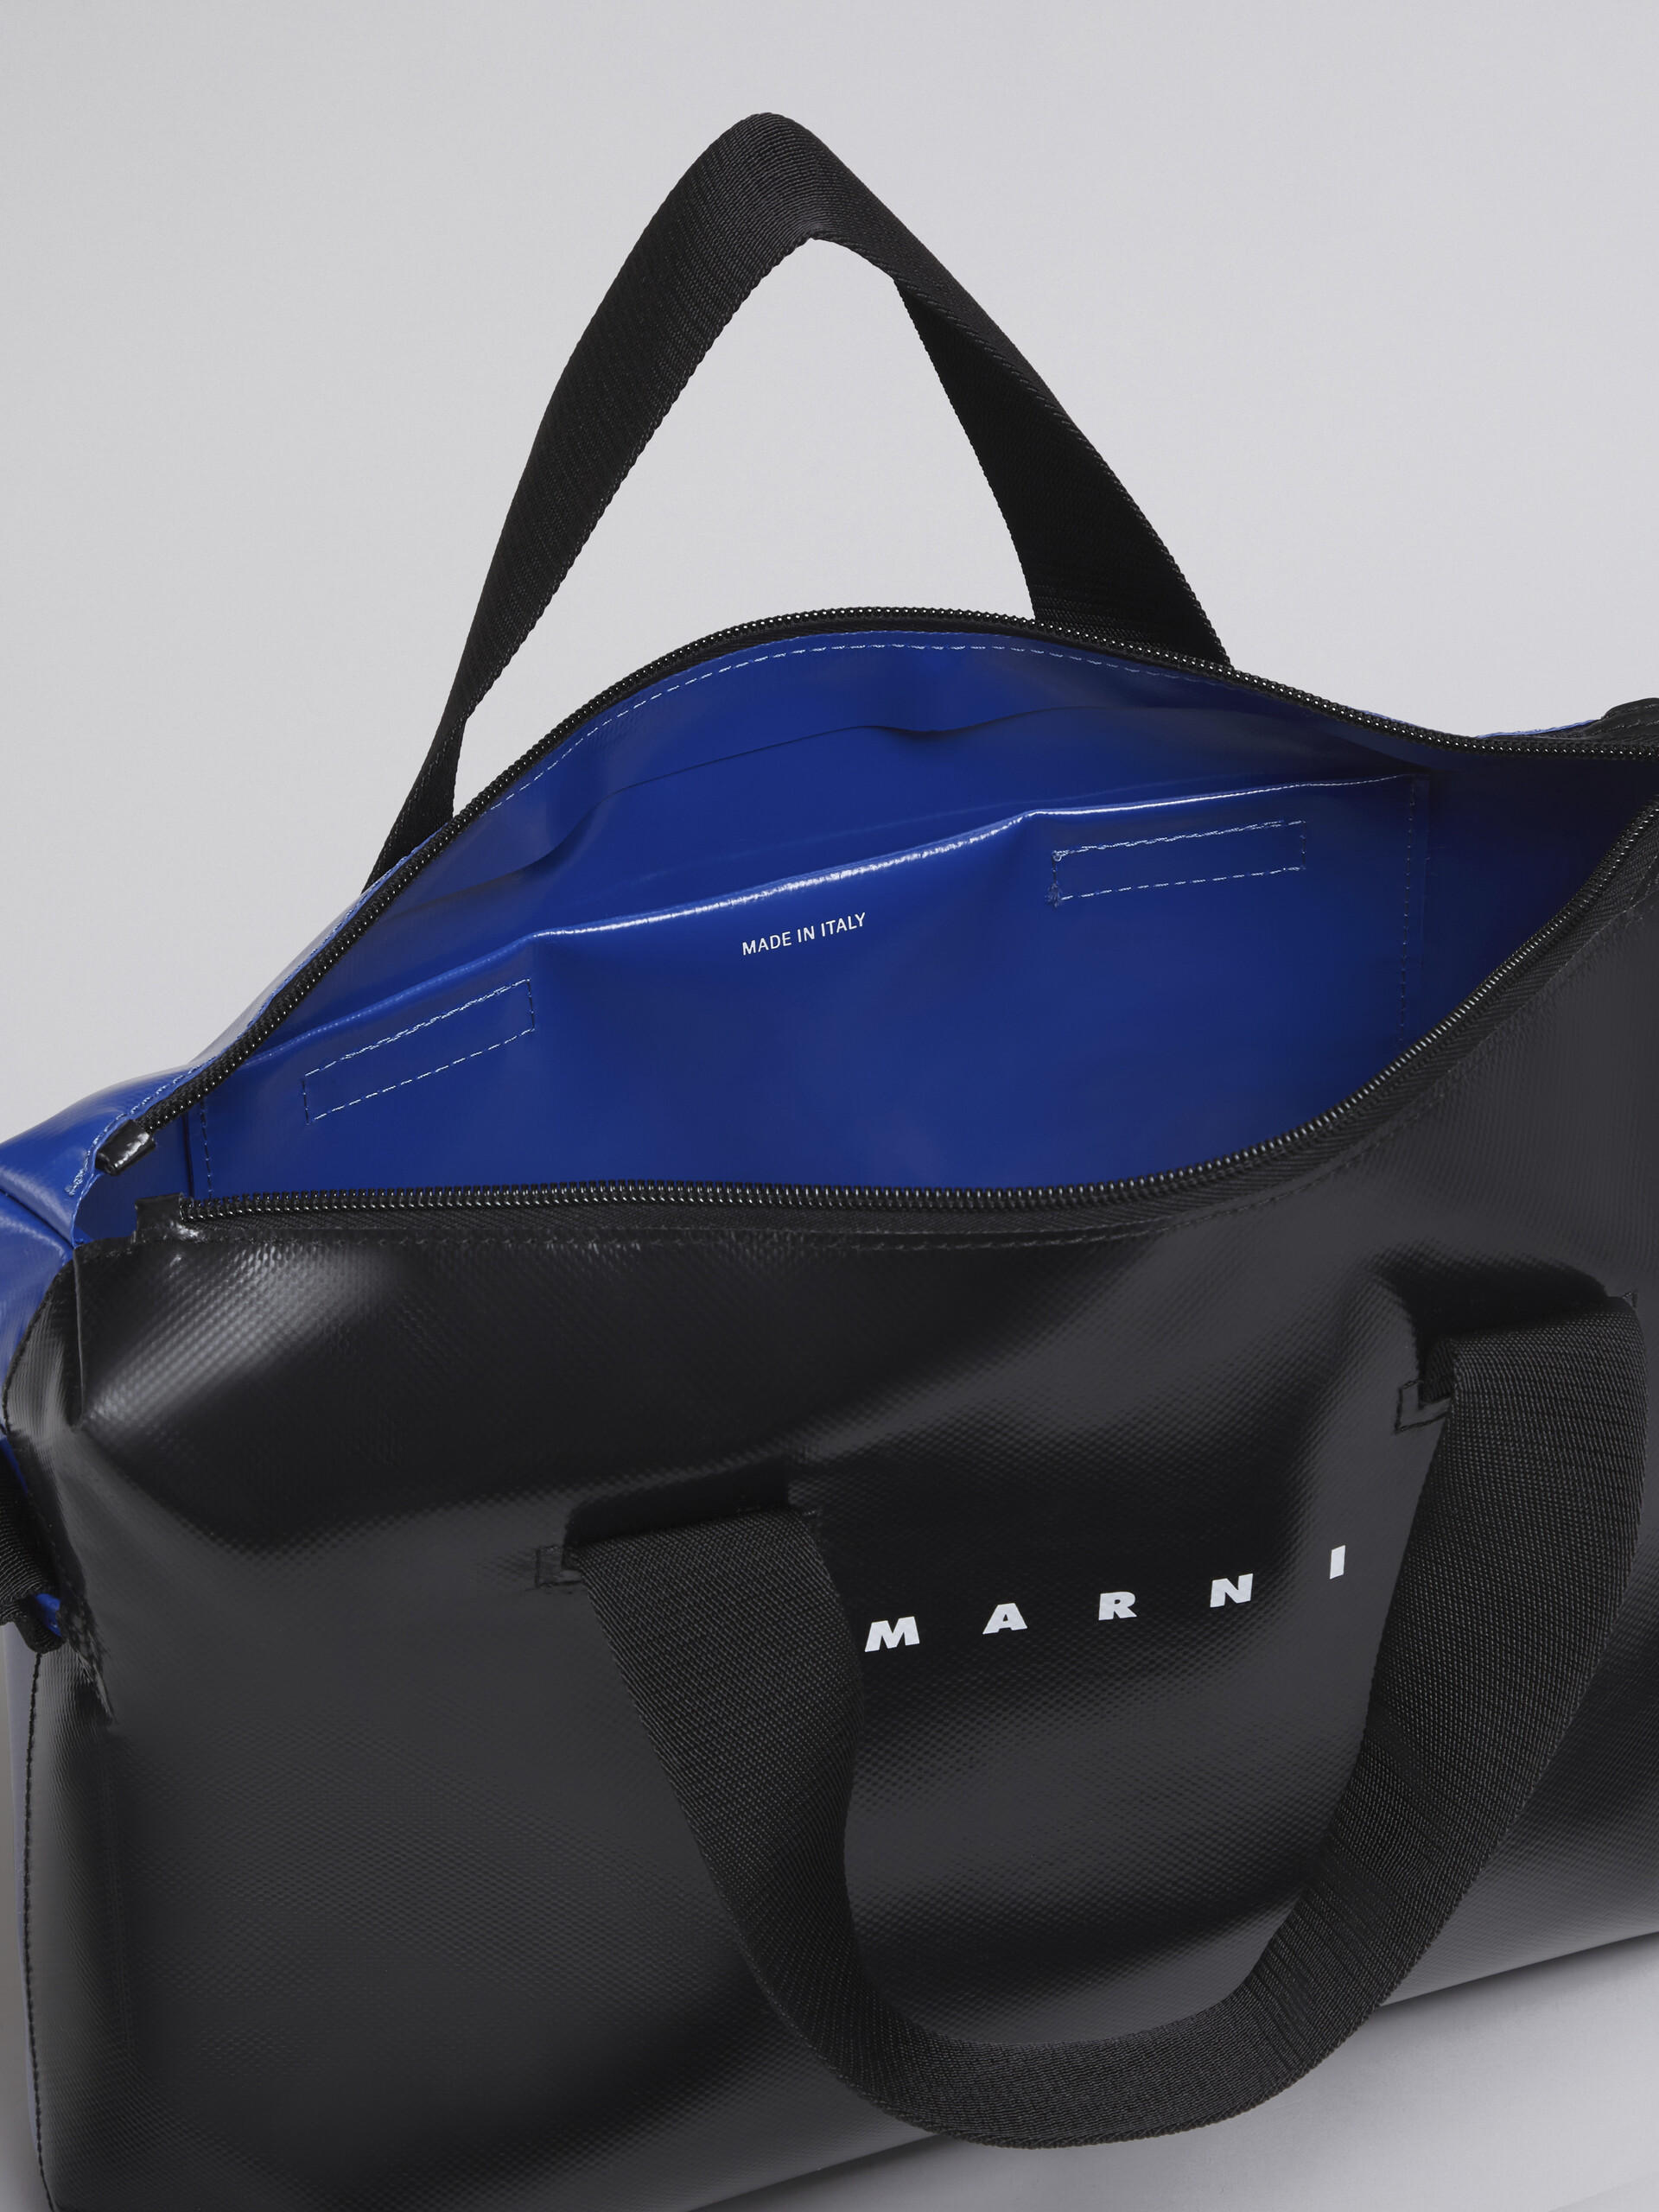 Black and blue TRIBECA bag - Handbags - Image 4